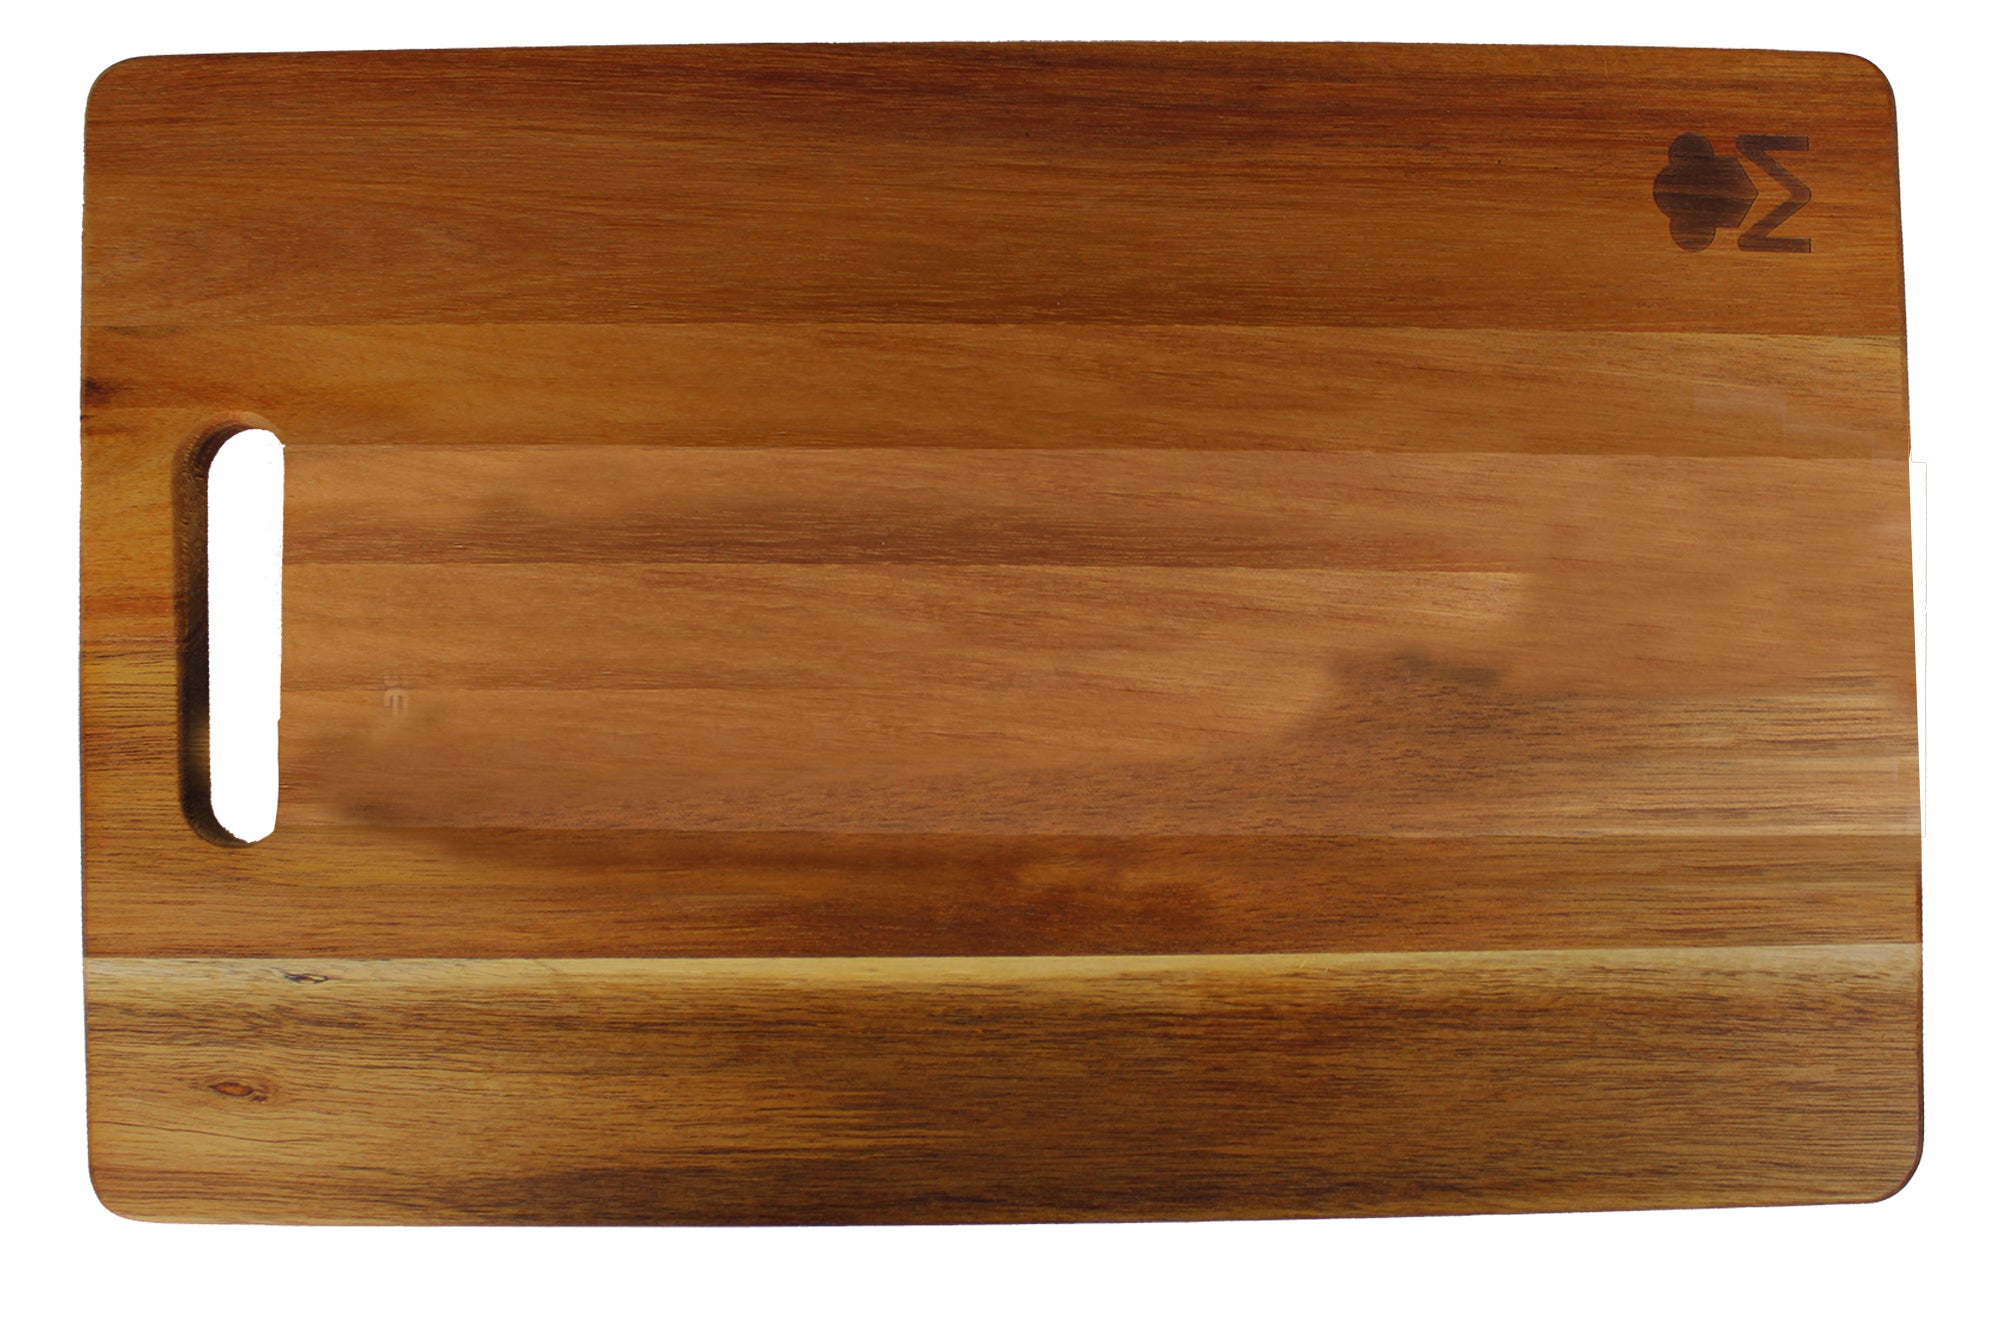 Bergner Masterpro Smart 40x25cm Natural Wood Chopping Board - Acacia Wood